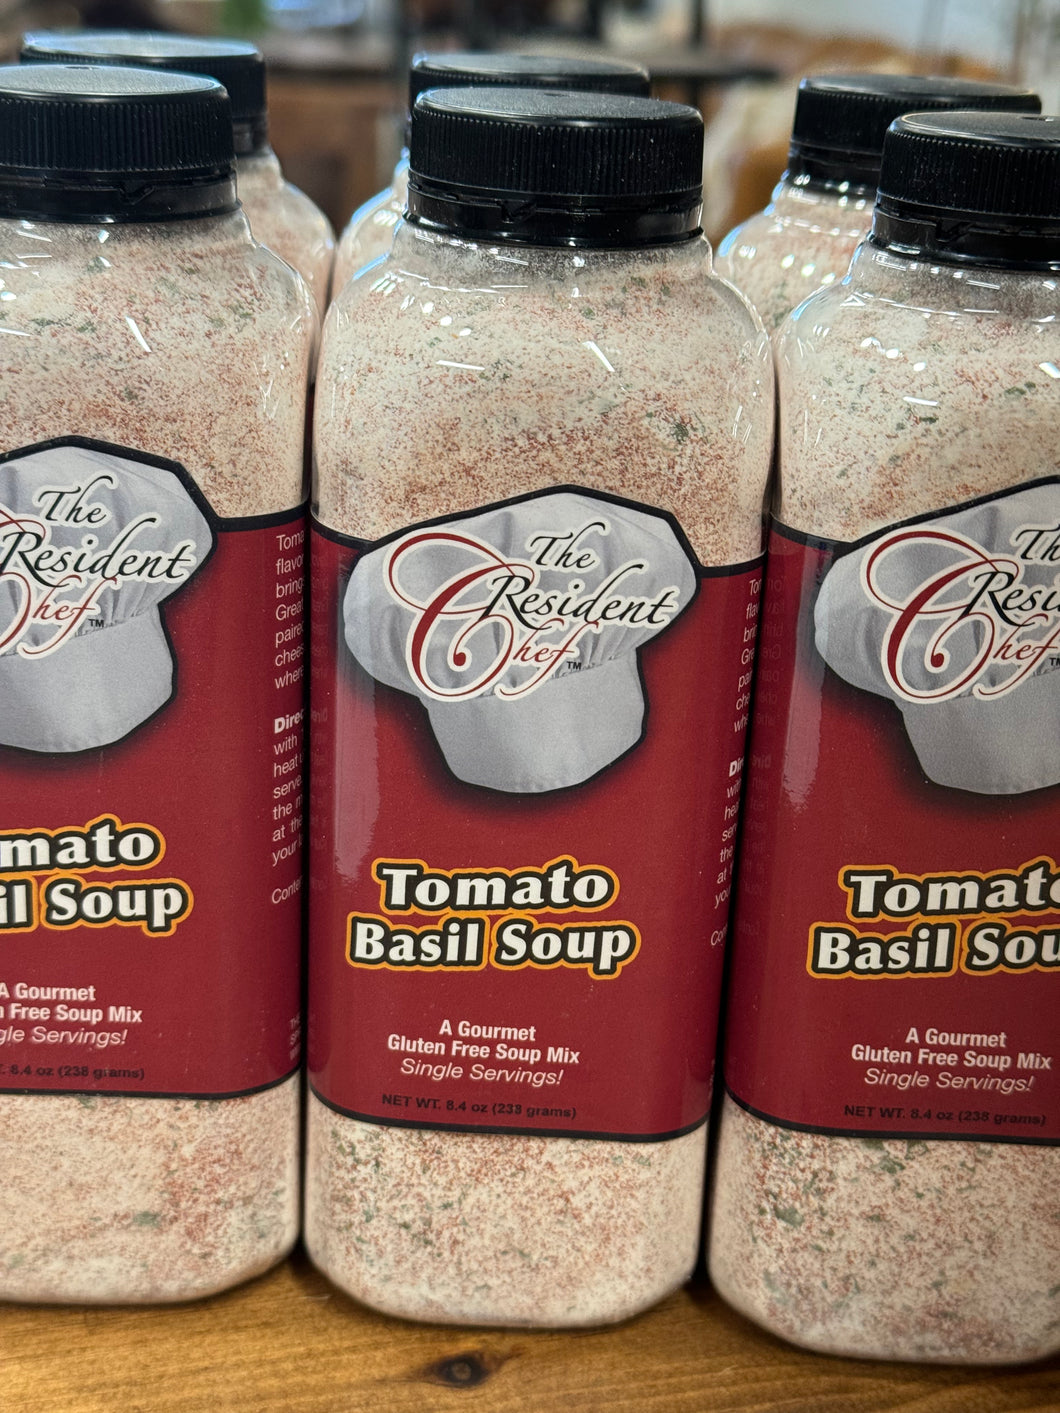 Tomato Basil Soup, single serve